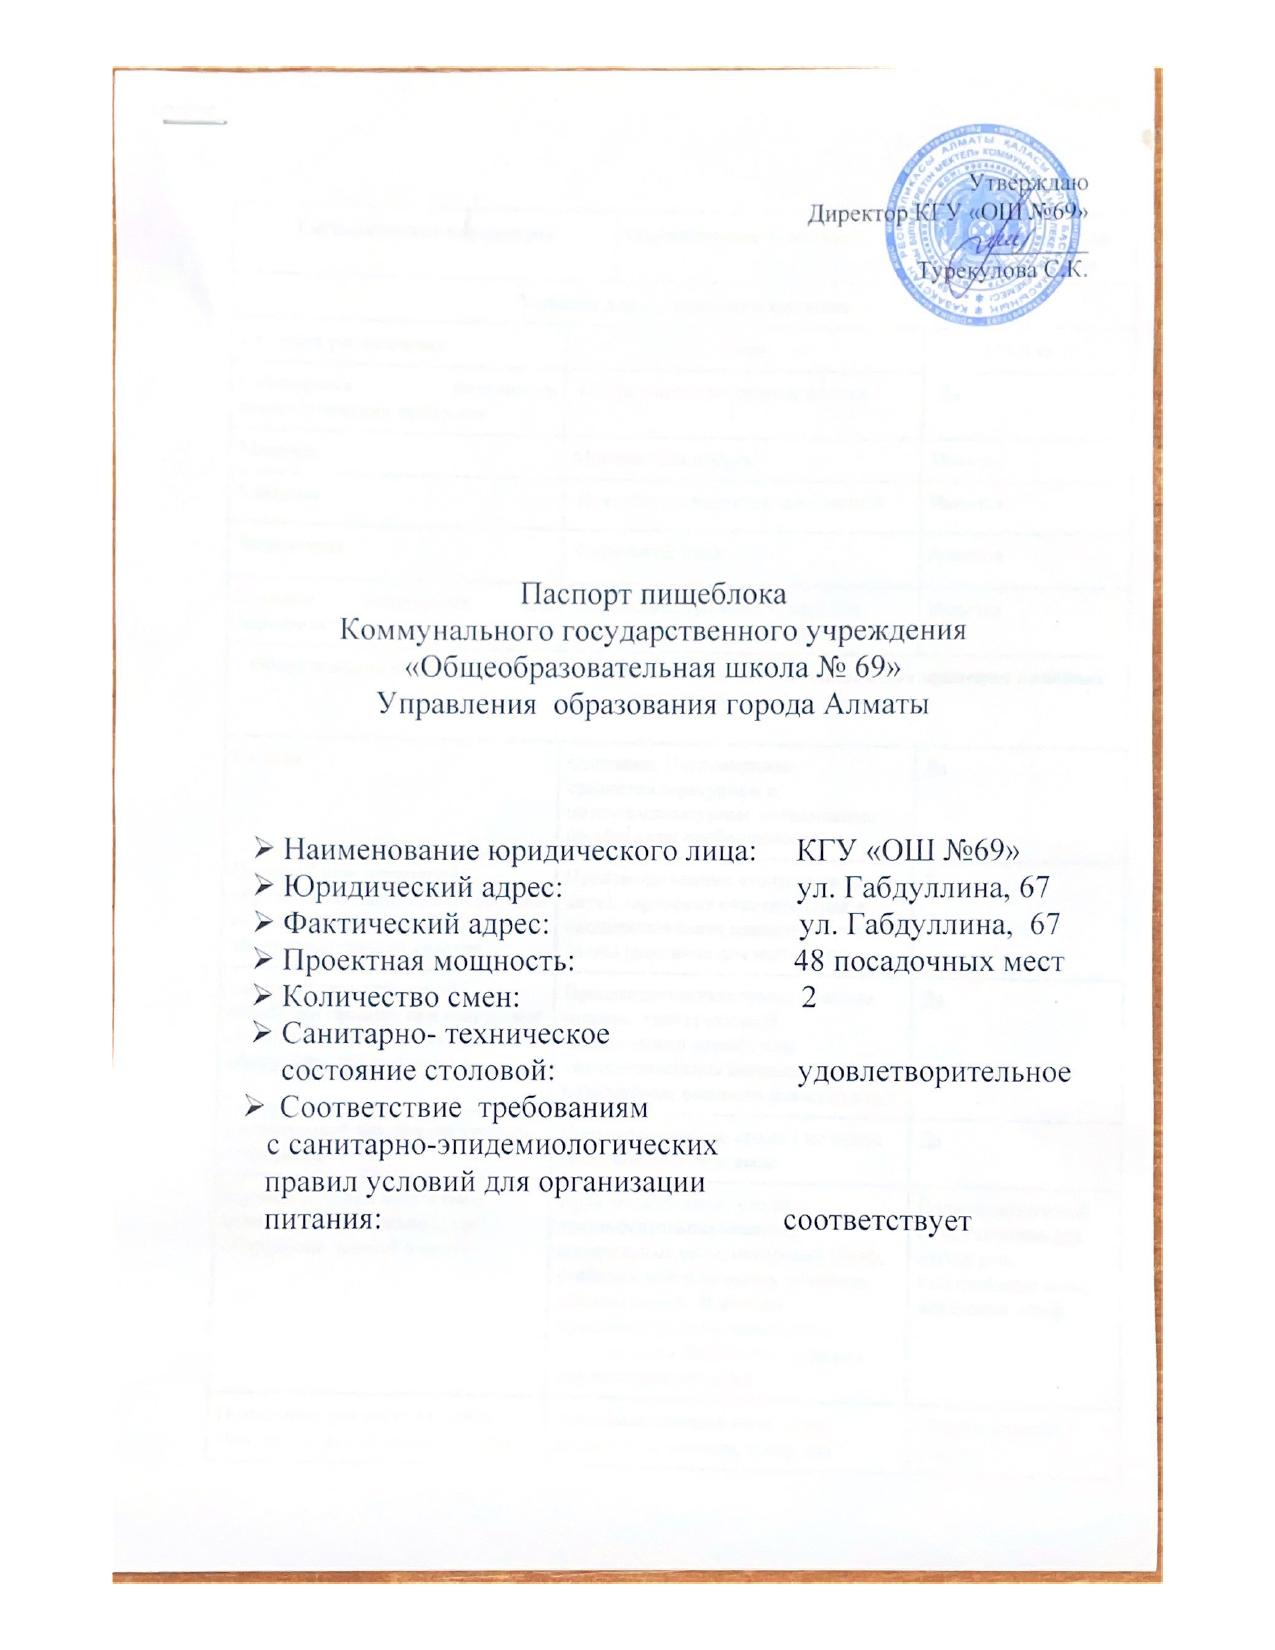 Паспорт пищеблока КГУ "Общеобразовательная школа №69"